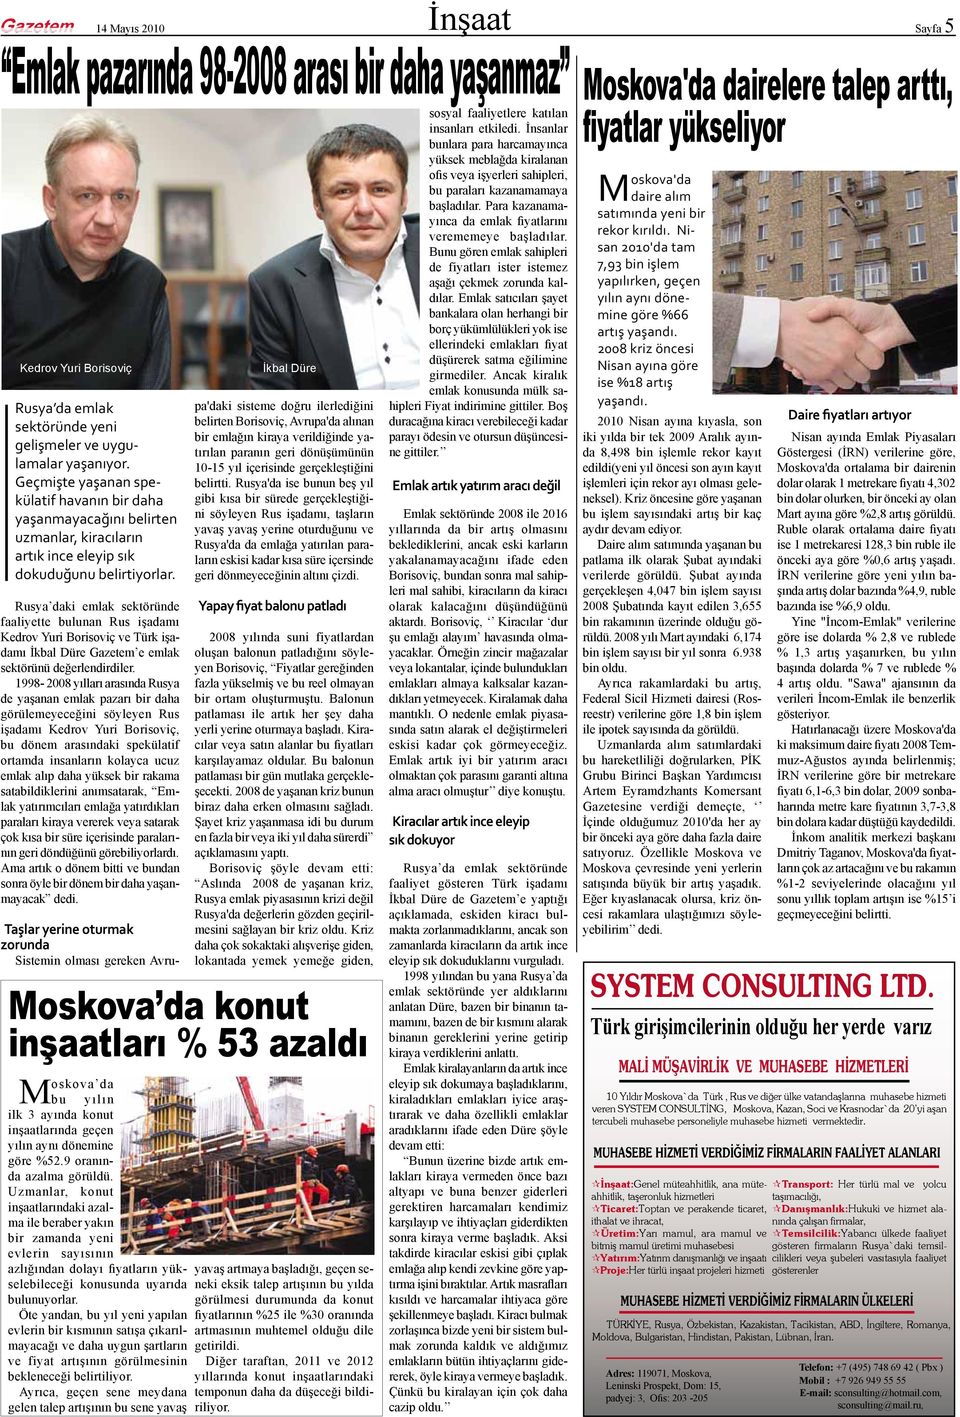 Rusya daki emlak sektöründe faaliyette bulunan Rus işadamı Kedrov Yuri Borisoviç ve Türk işadamı İkbal Düre Gazetem e emlak sektörünü değerlendirdiler.